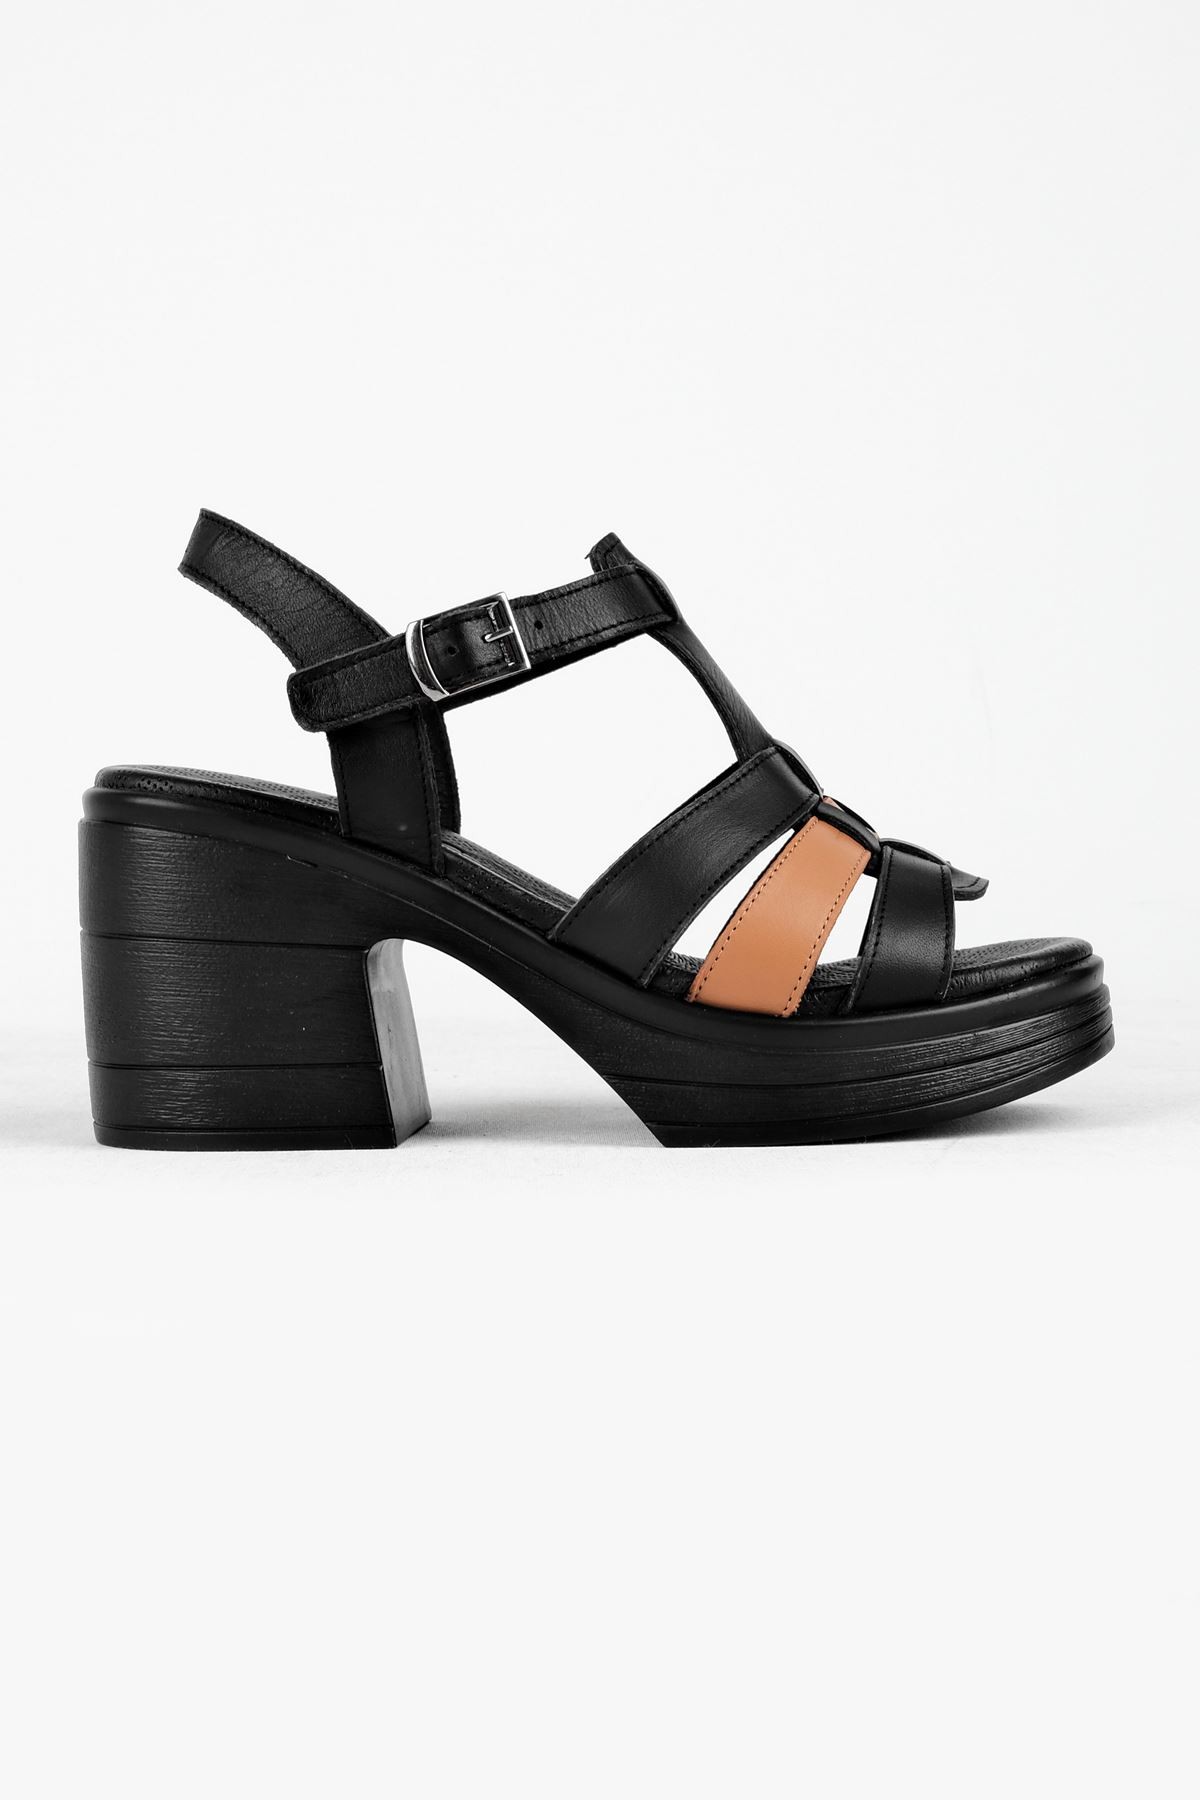 Groly Kemerli Kadın Hakiki Deri Topuklu Ayakkabı B3174 - Siyah